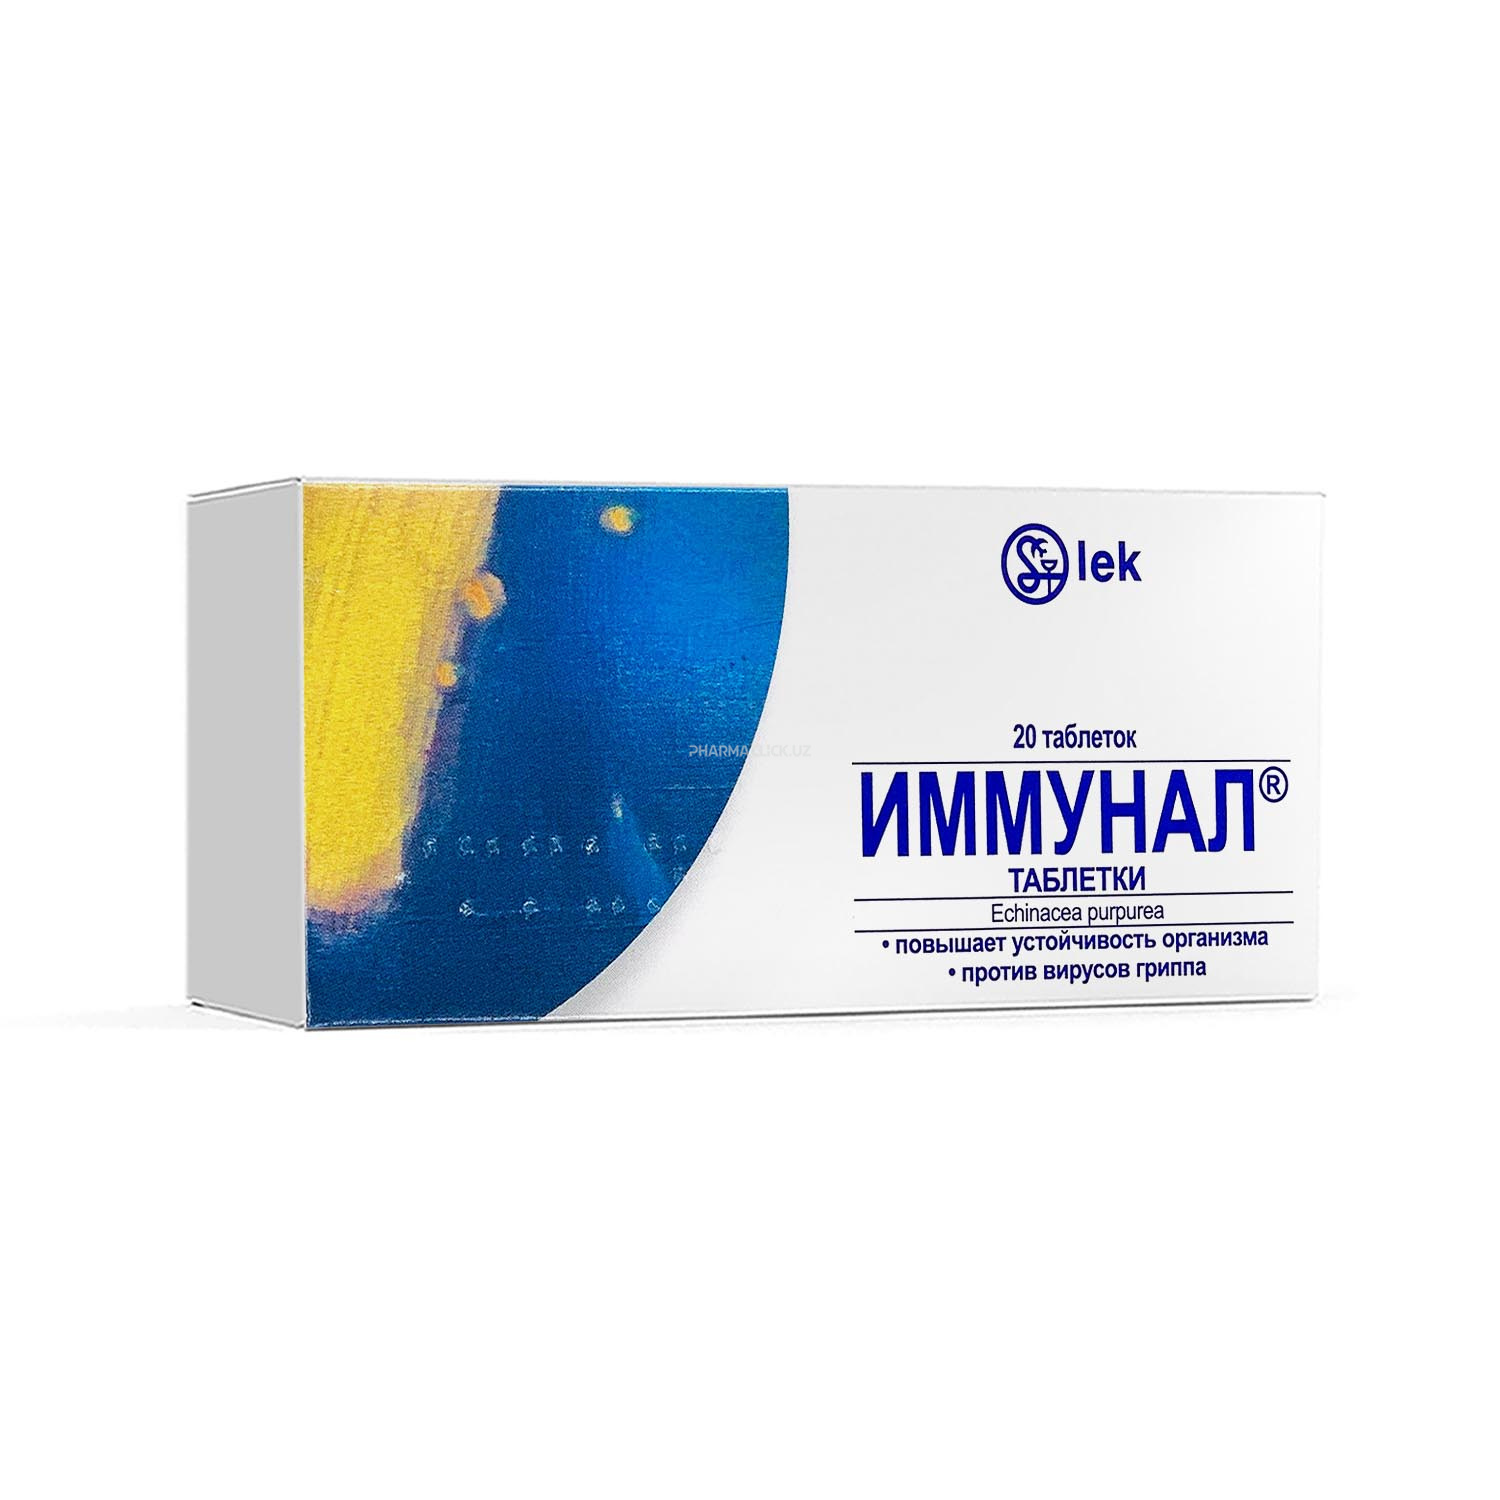 Immunal 80 mg tab. №20